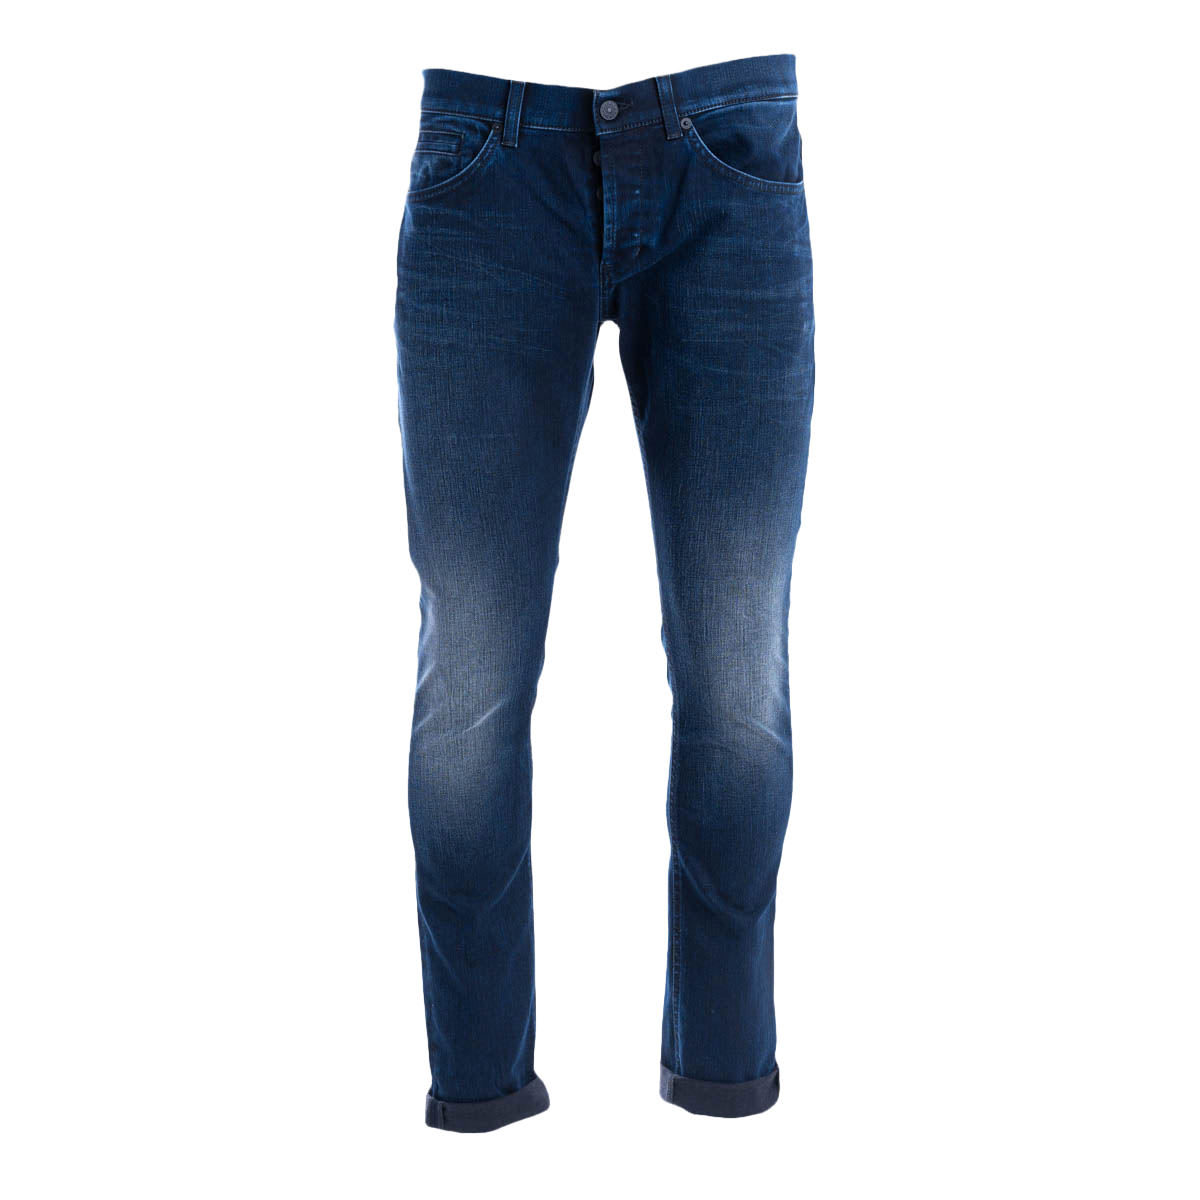 Dondup Dondup Regular Cotton Blend Jeans Model george Skinny Fit